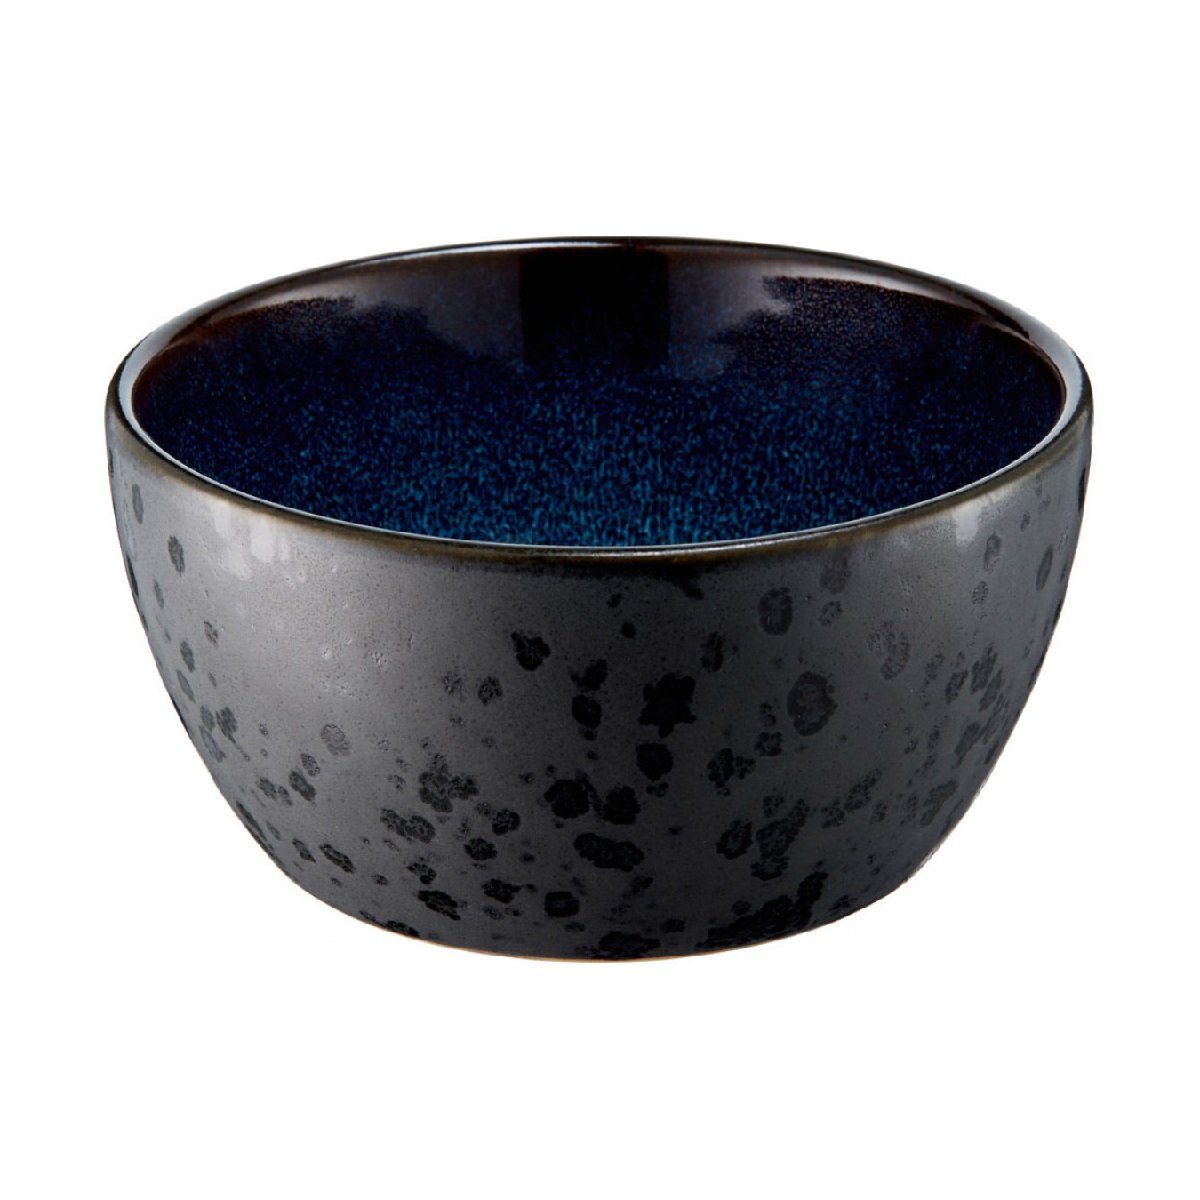 Bitz Schüssel Gastro black blue, / schwarz/dunkelblau 12 6 Steinzeug, dark / cm d: cm h